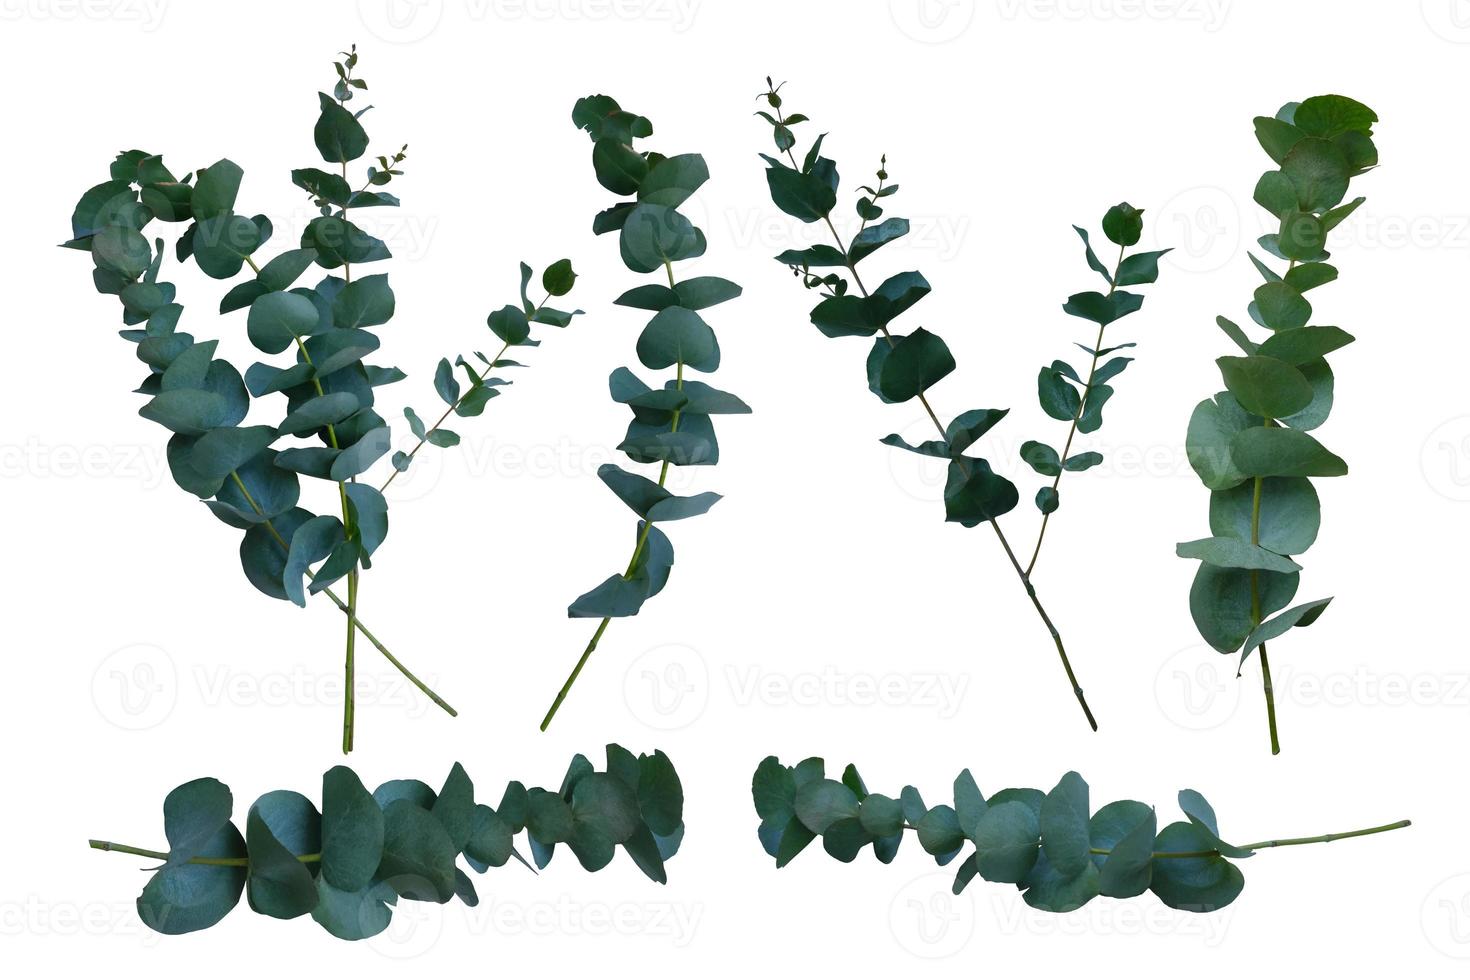 branches de plantes à feuilles persistantes d'eucalyptus serties de feuilles vert vif gros plan d'un objet floral découpé sur fond blanc, élément de décoration pour toute conception, chemin de détourage photo